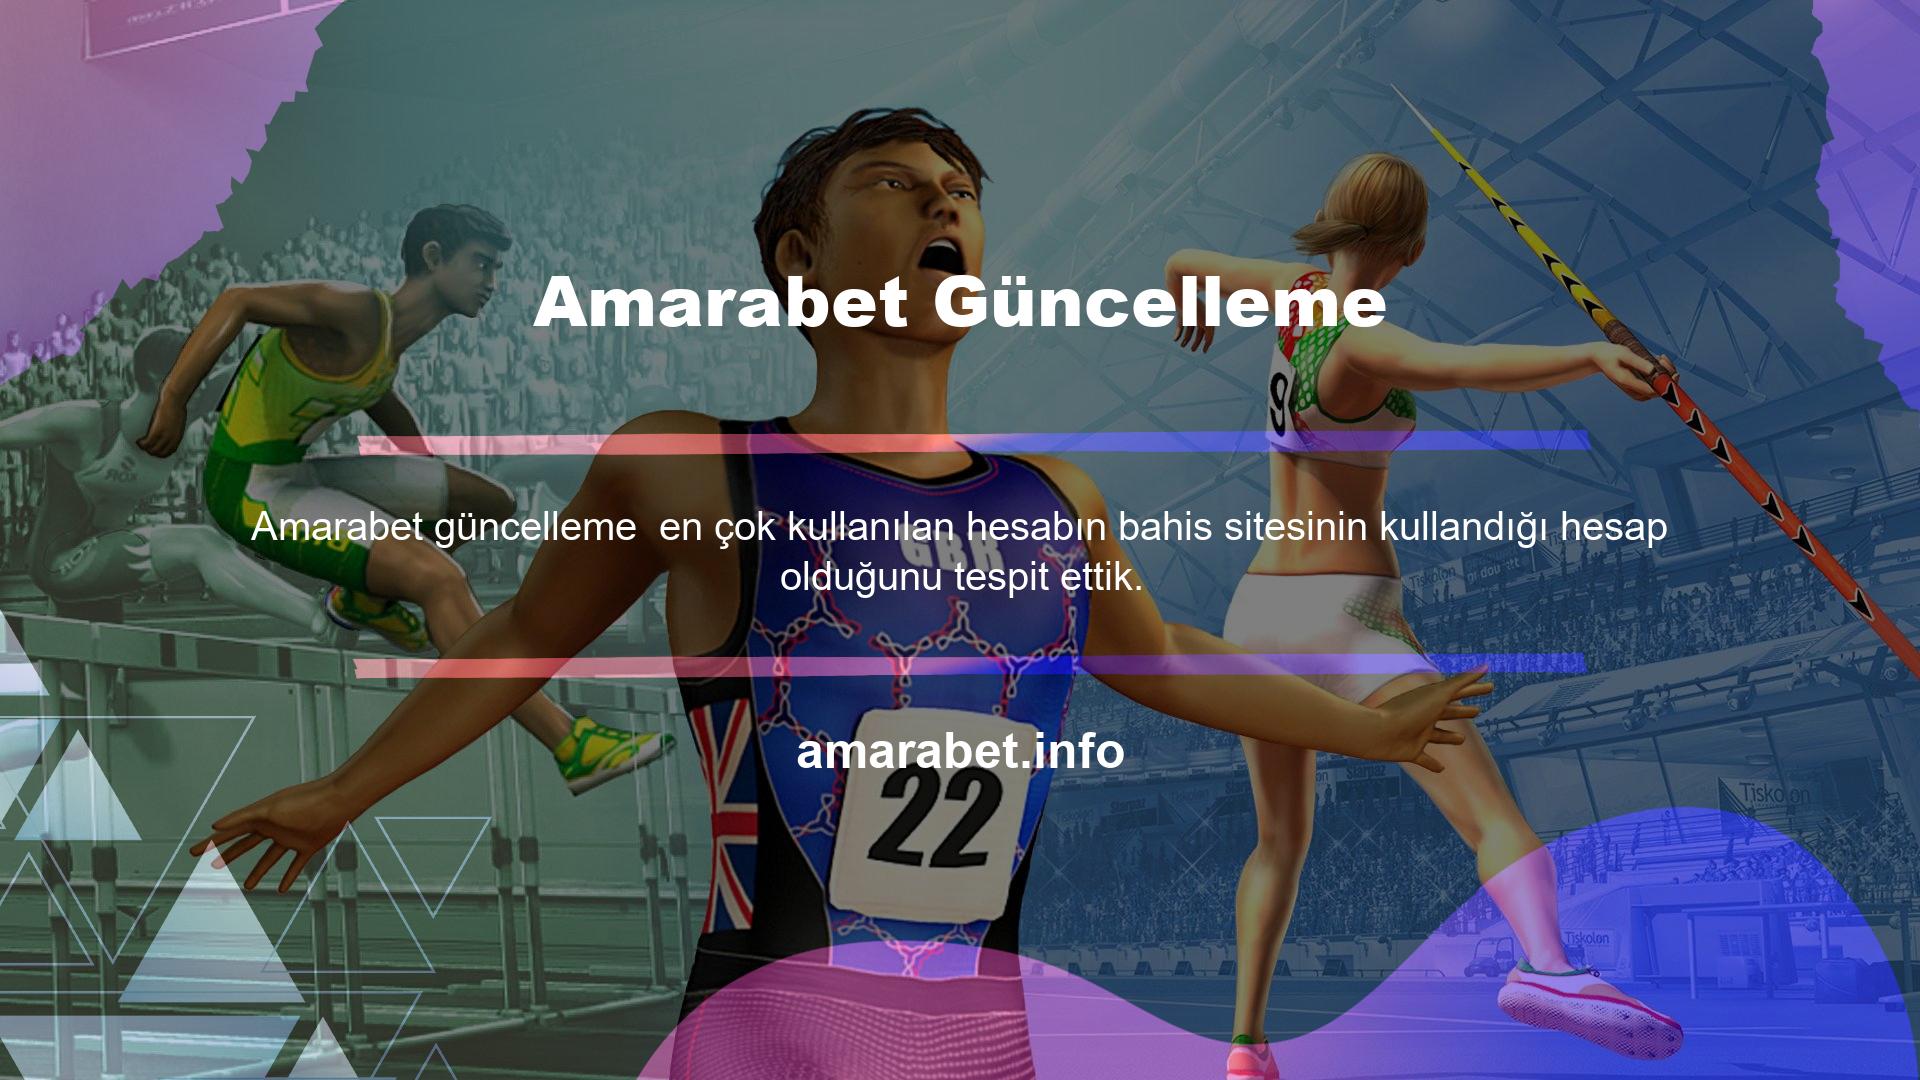 Türkiye'de ise Amarabet Twitter hesabını aktif olarak kullanırken kapsamlı adres güncellemeleri paylaşıyor